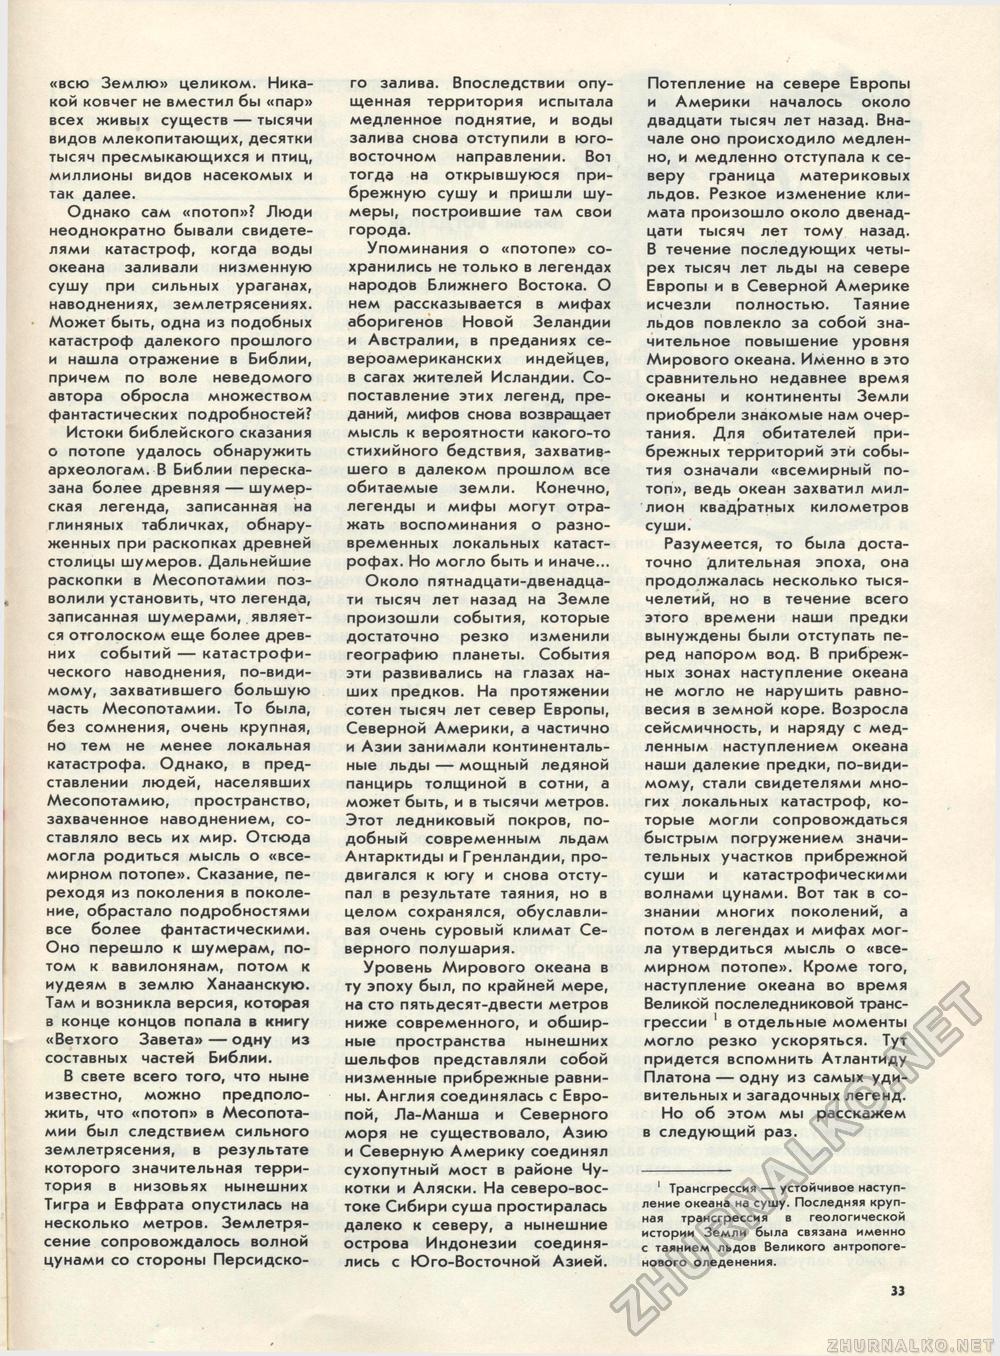  1989-03,  42